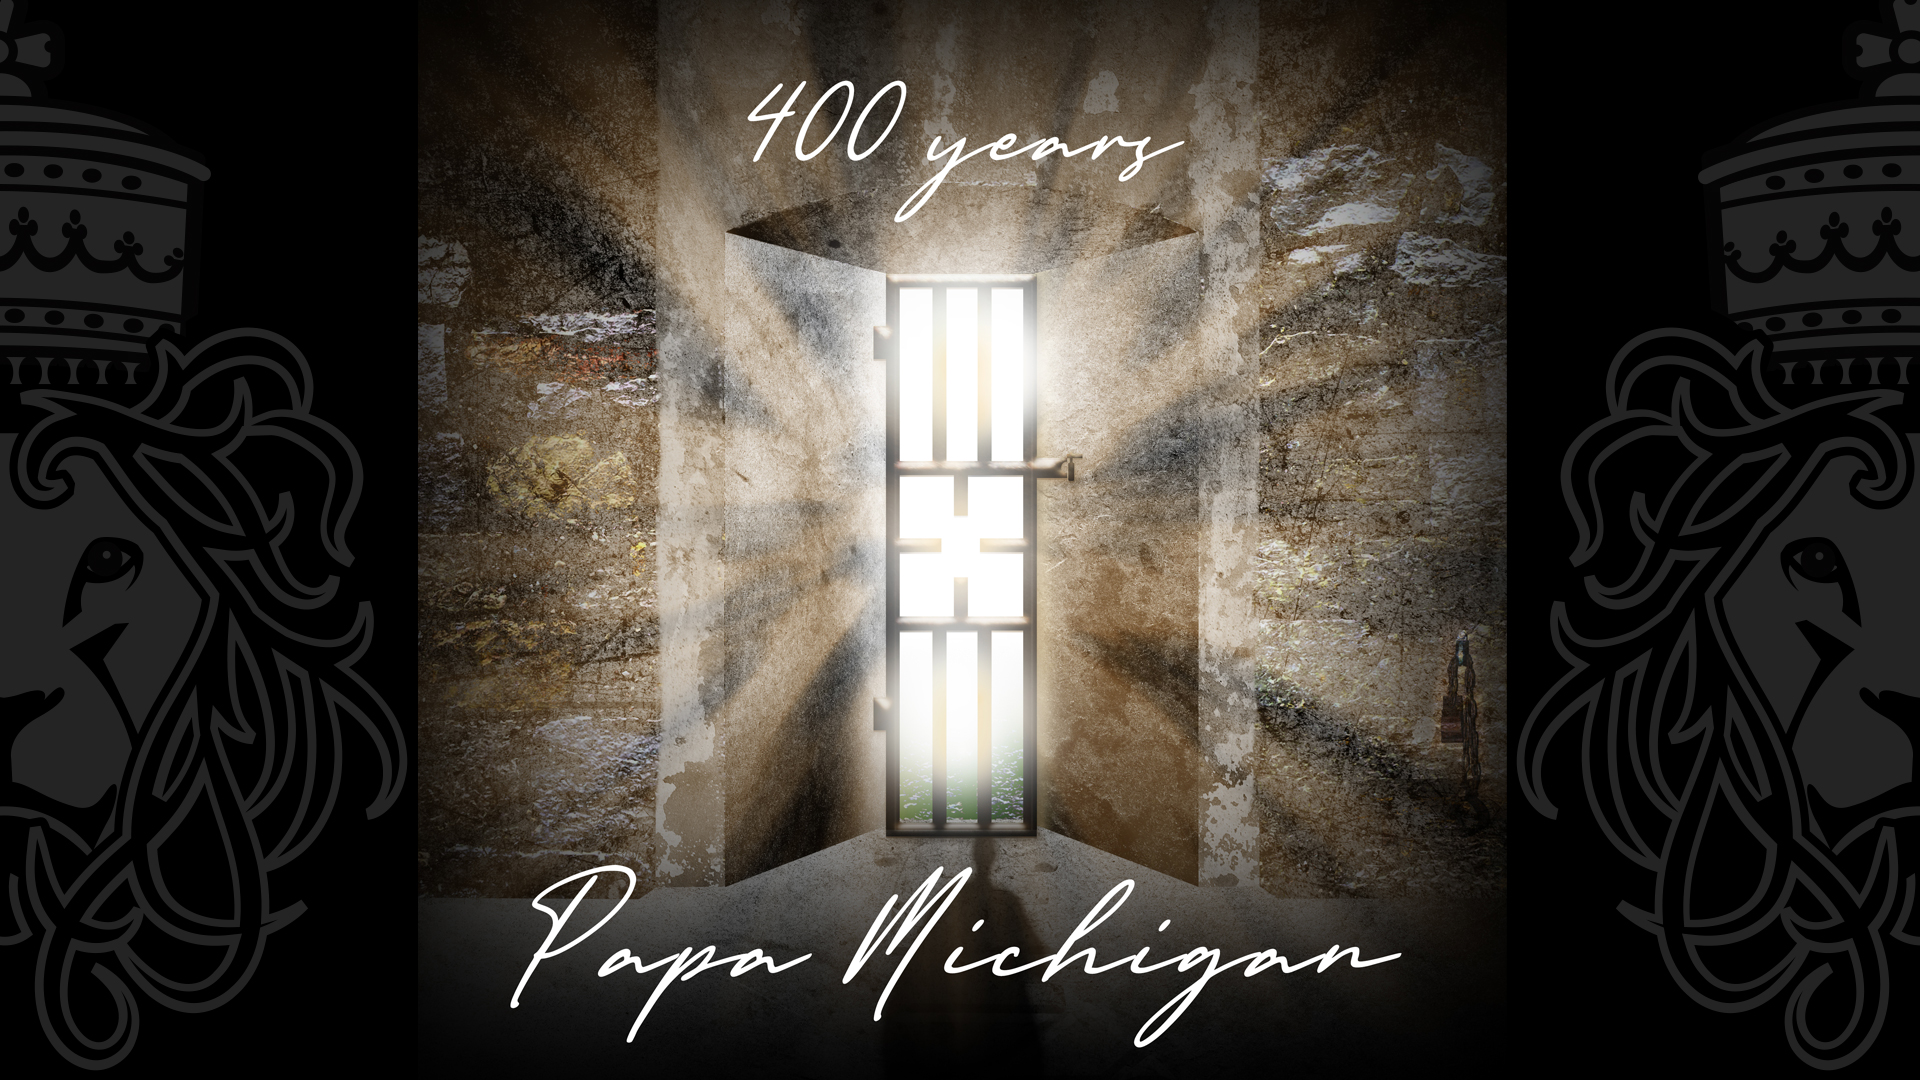 Papa Michigan - 400 years